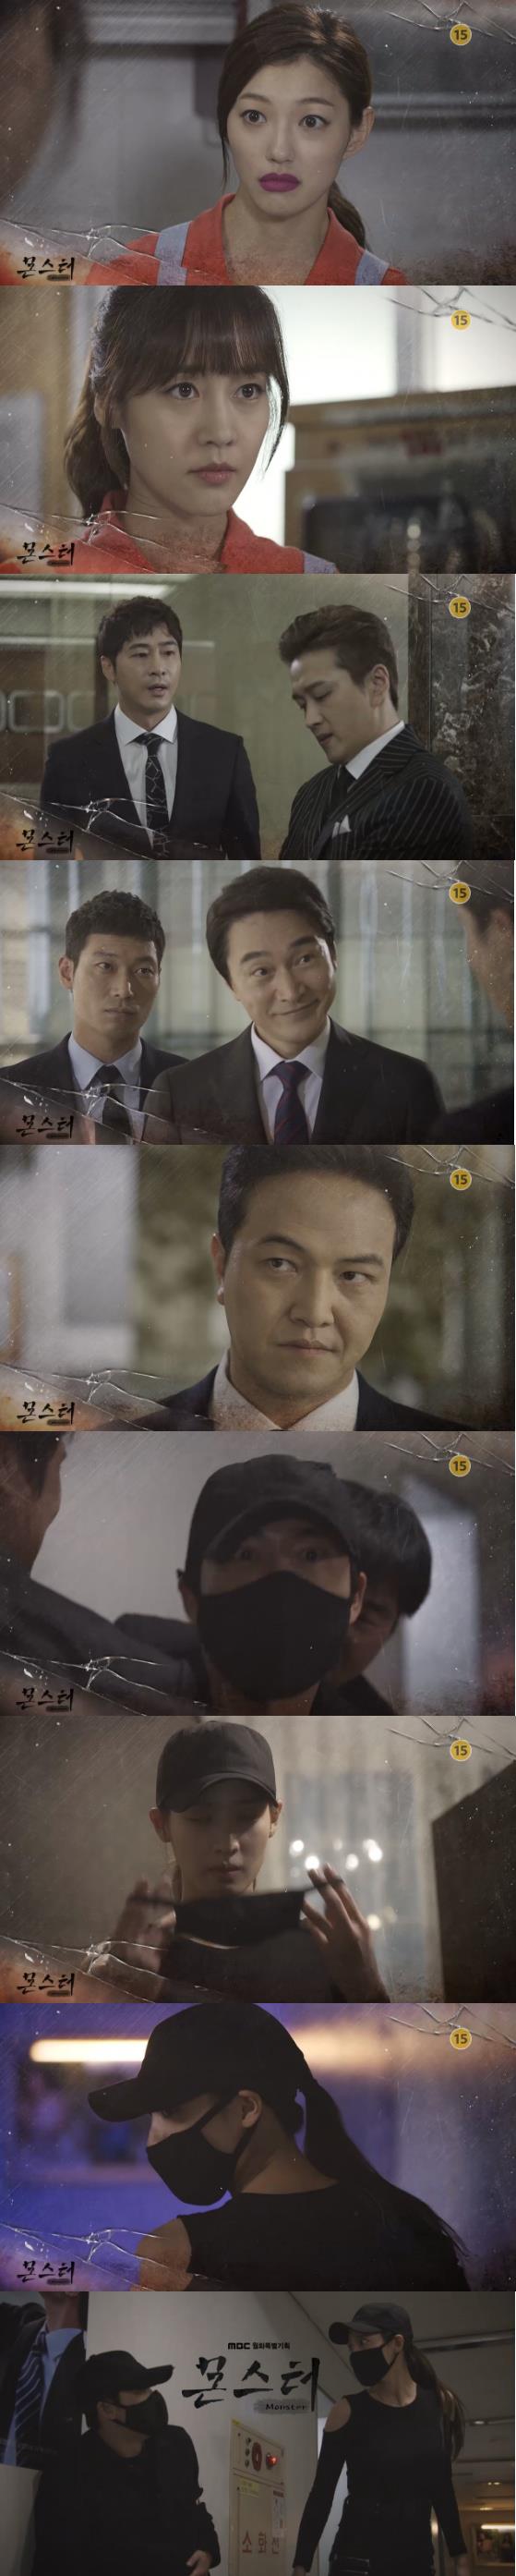 26일 밤 방송되는 MBC 월화드라마 '몬스터'에서  위기에 처한 강기탄(강지환)을 국정원 비밀 요원인 유성애(수현)가 나타나서 구해준다./사진=MBC 방송 캡처